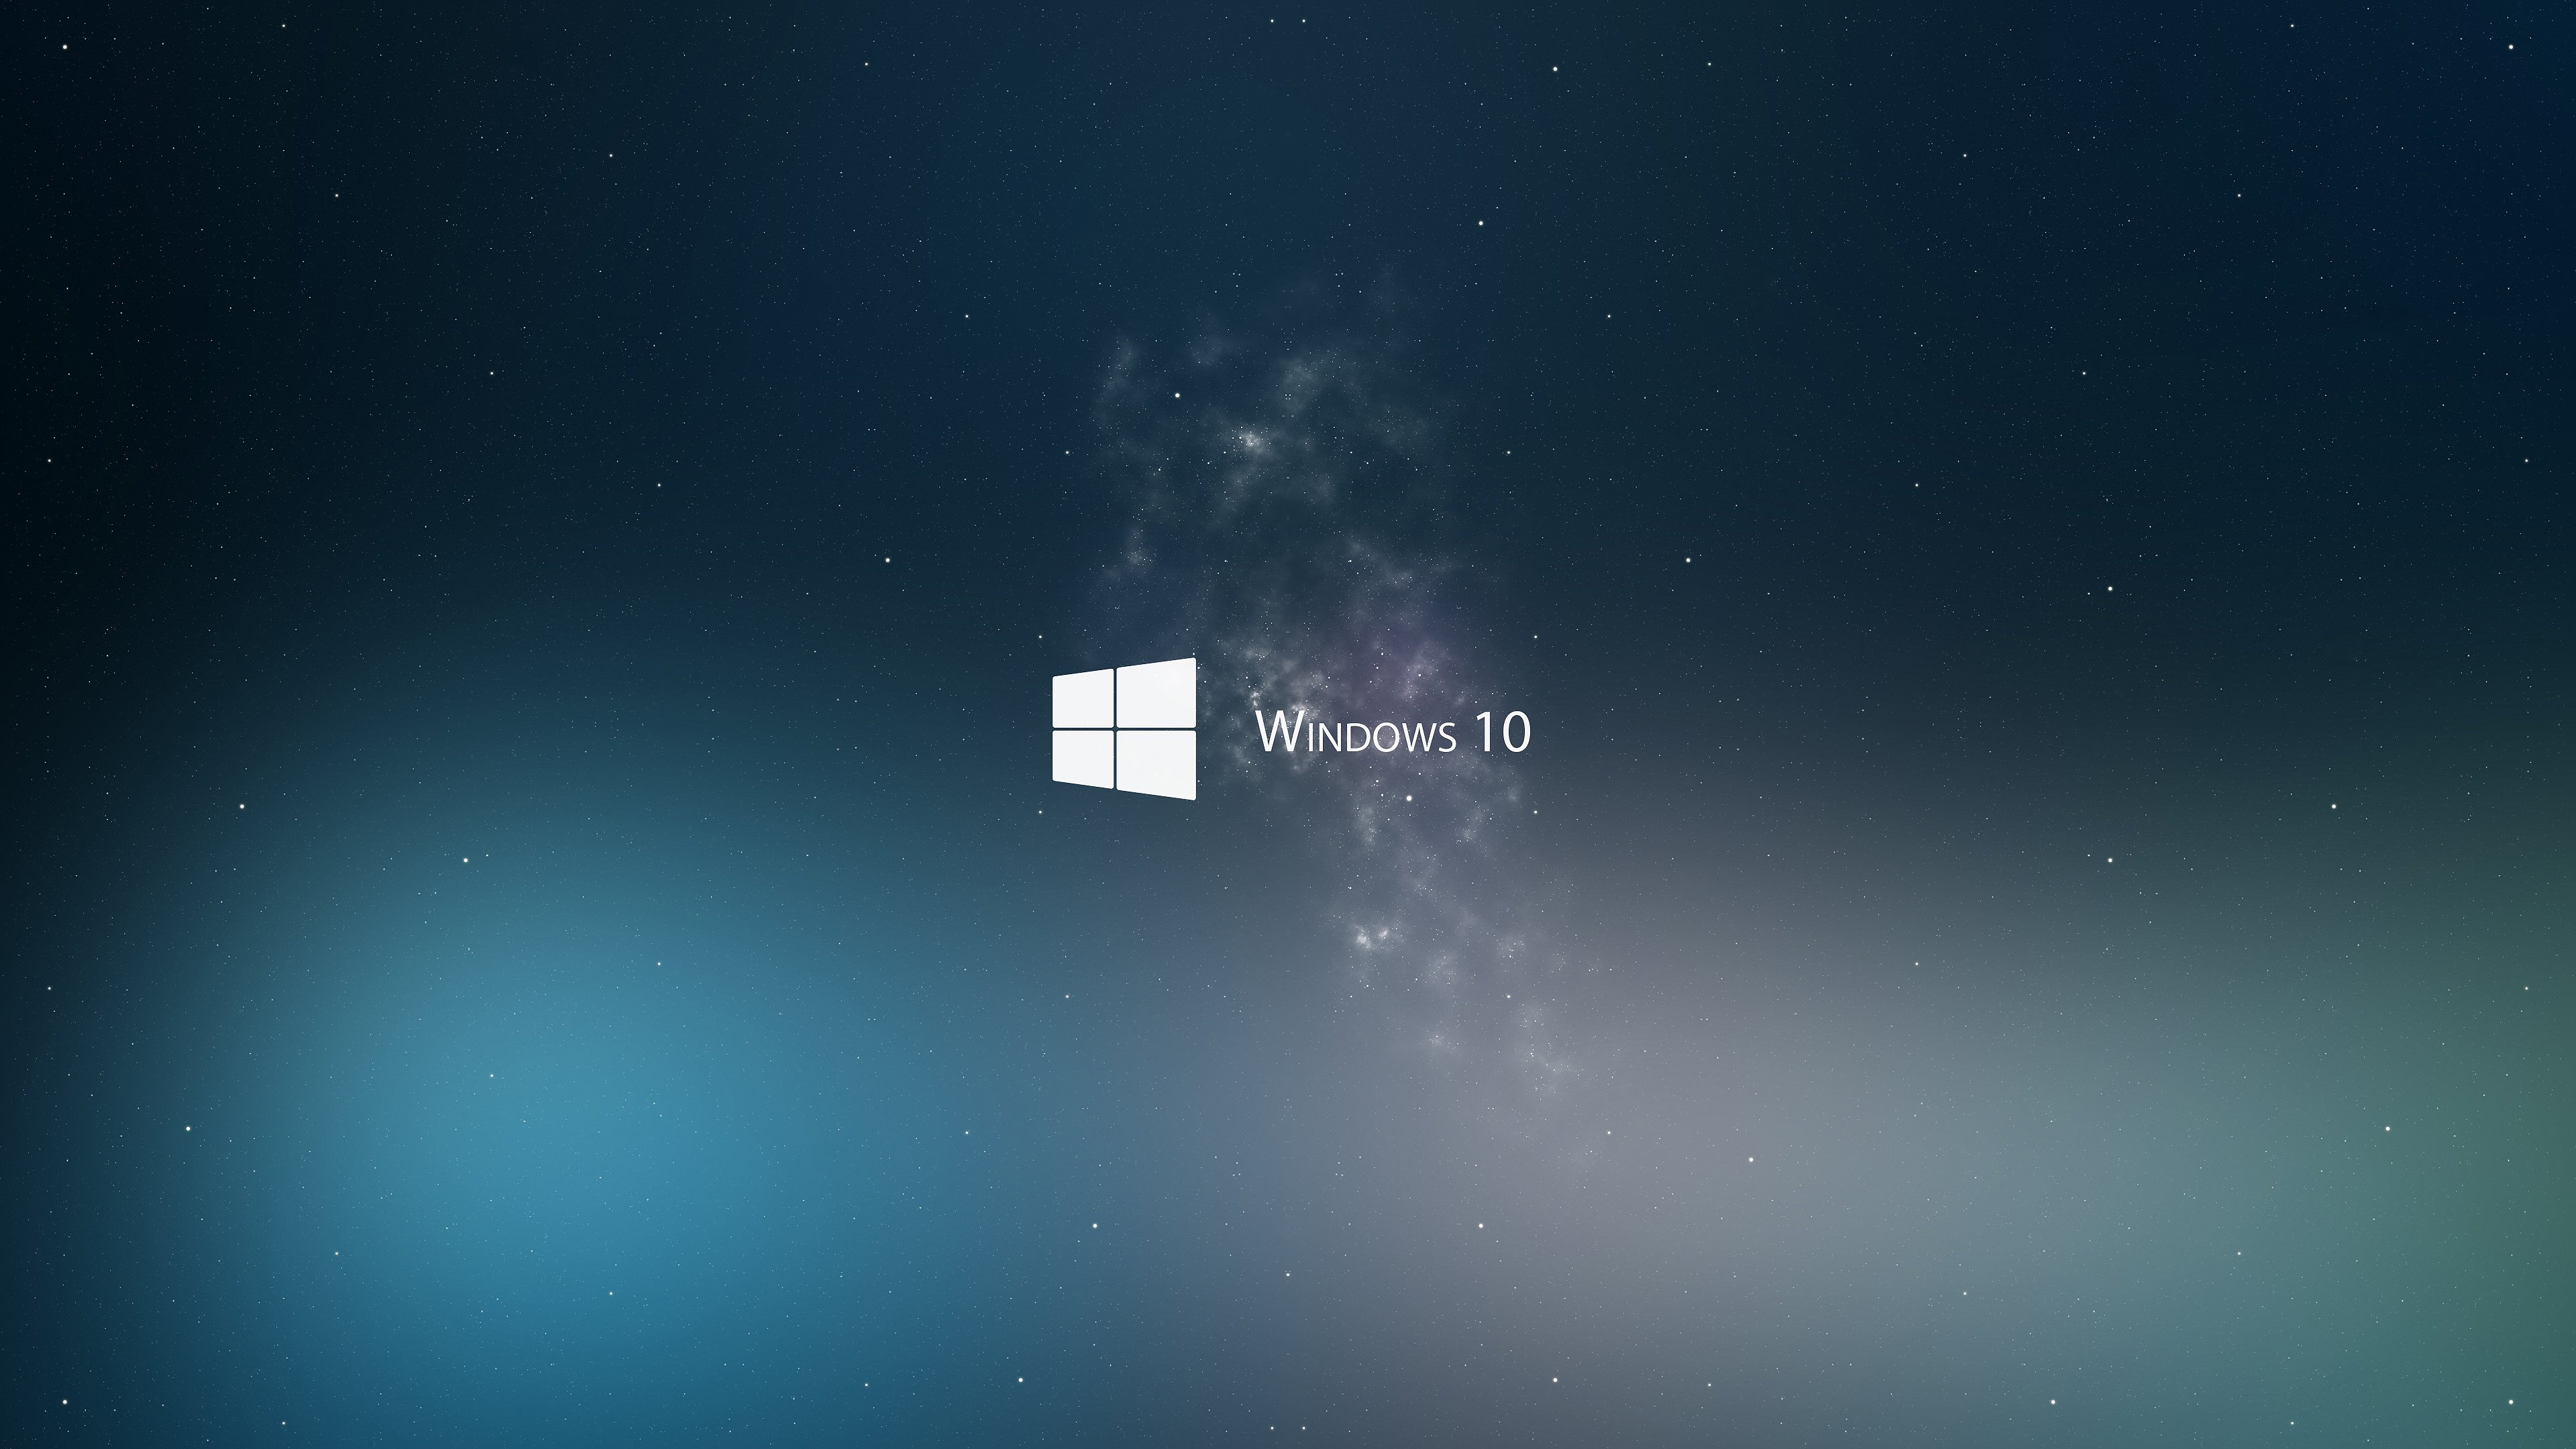 48+] 4K Live Wallpaper Windows 10 - WallpaperSafari